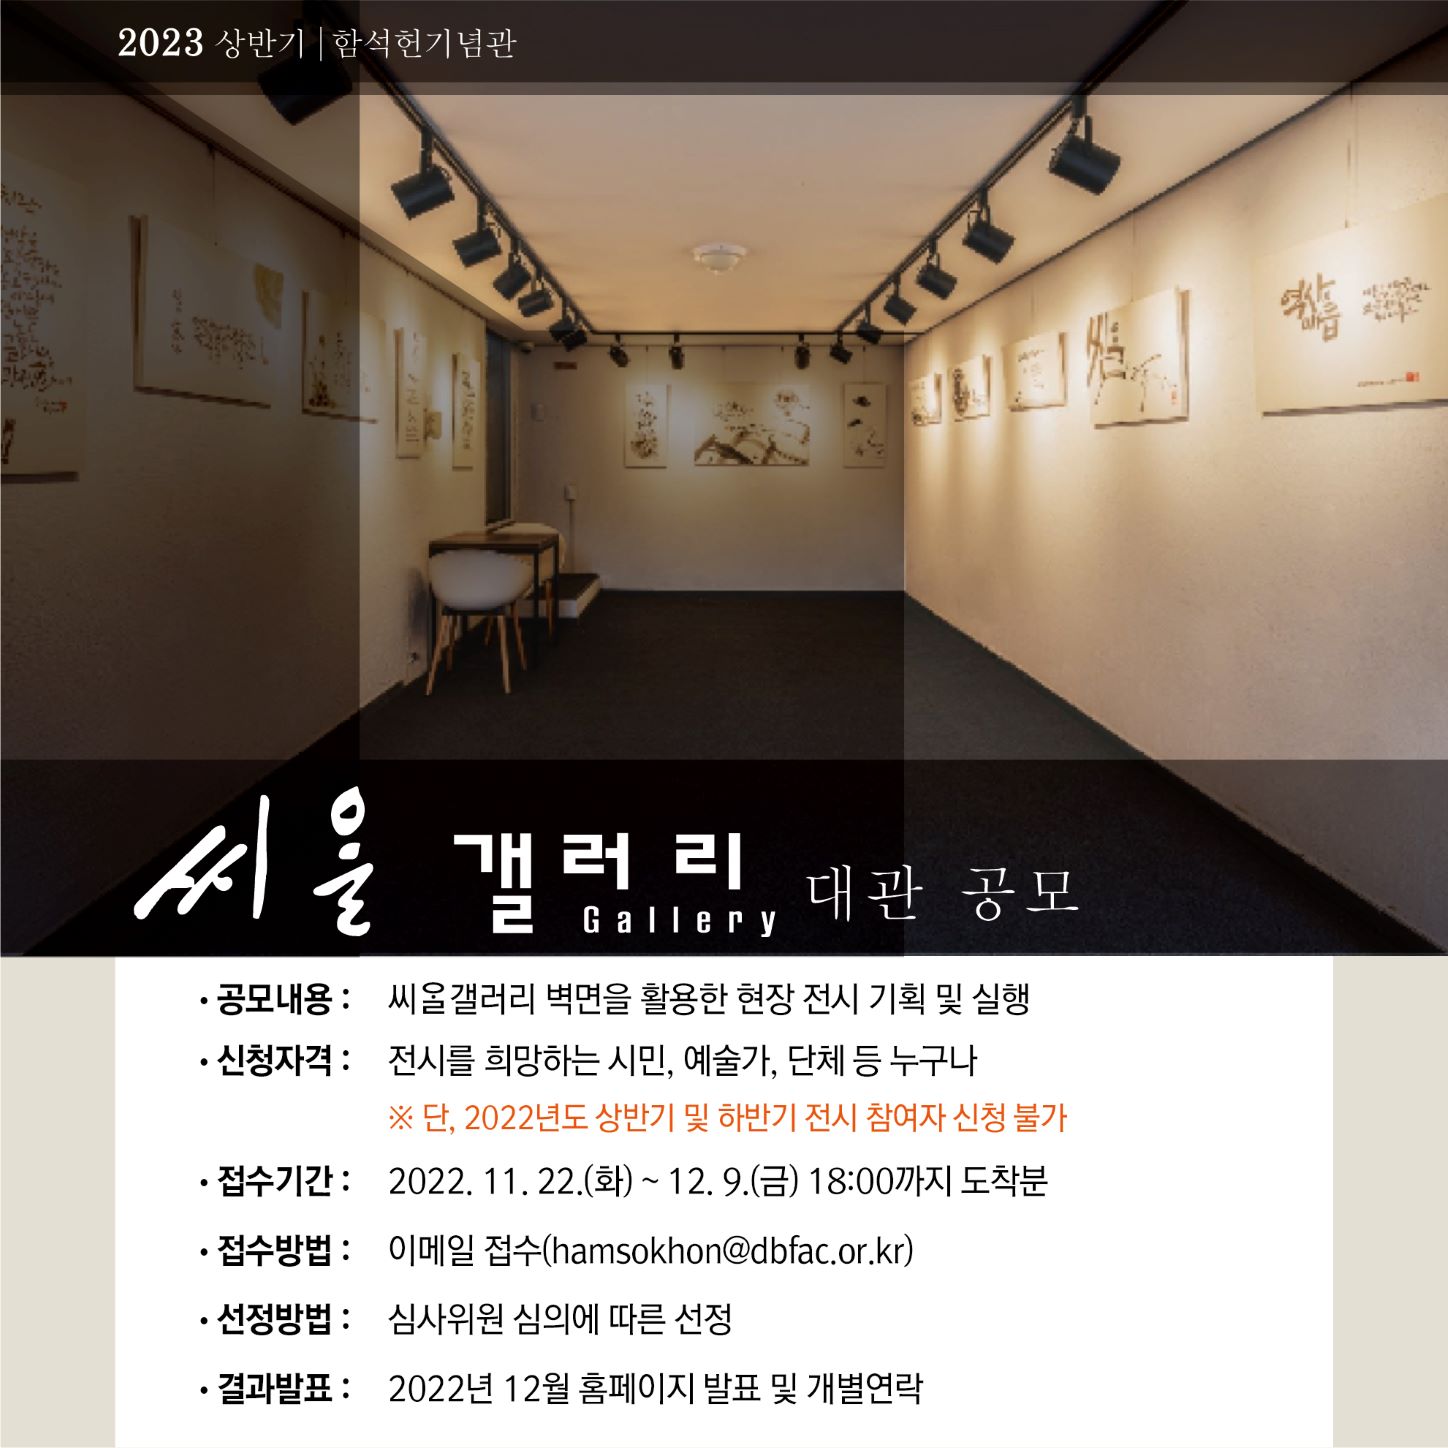 함석헌기념관 씨알갤러리의 2023년 상반기 정기대관 공모